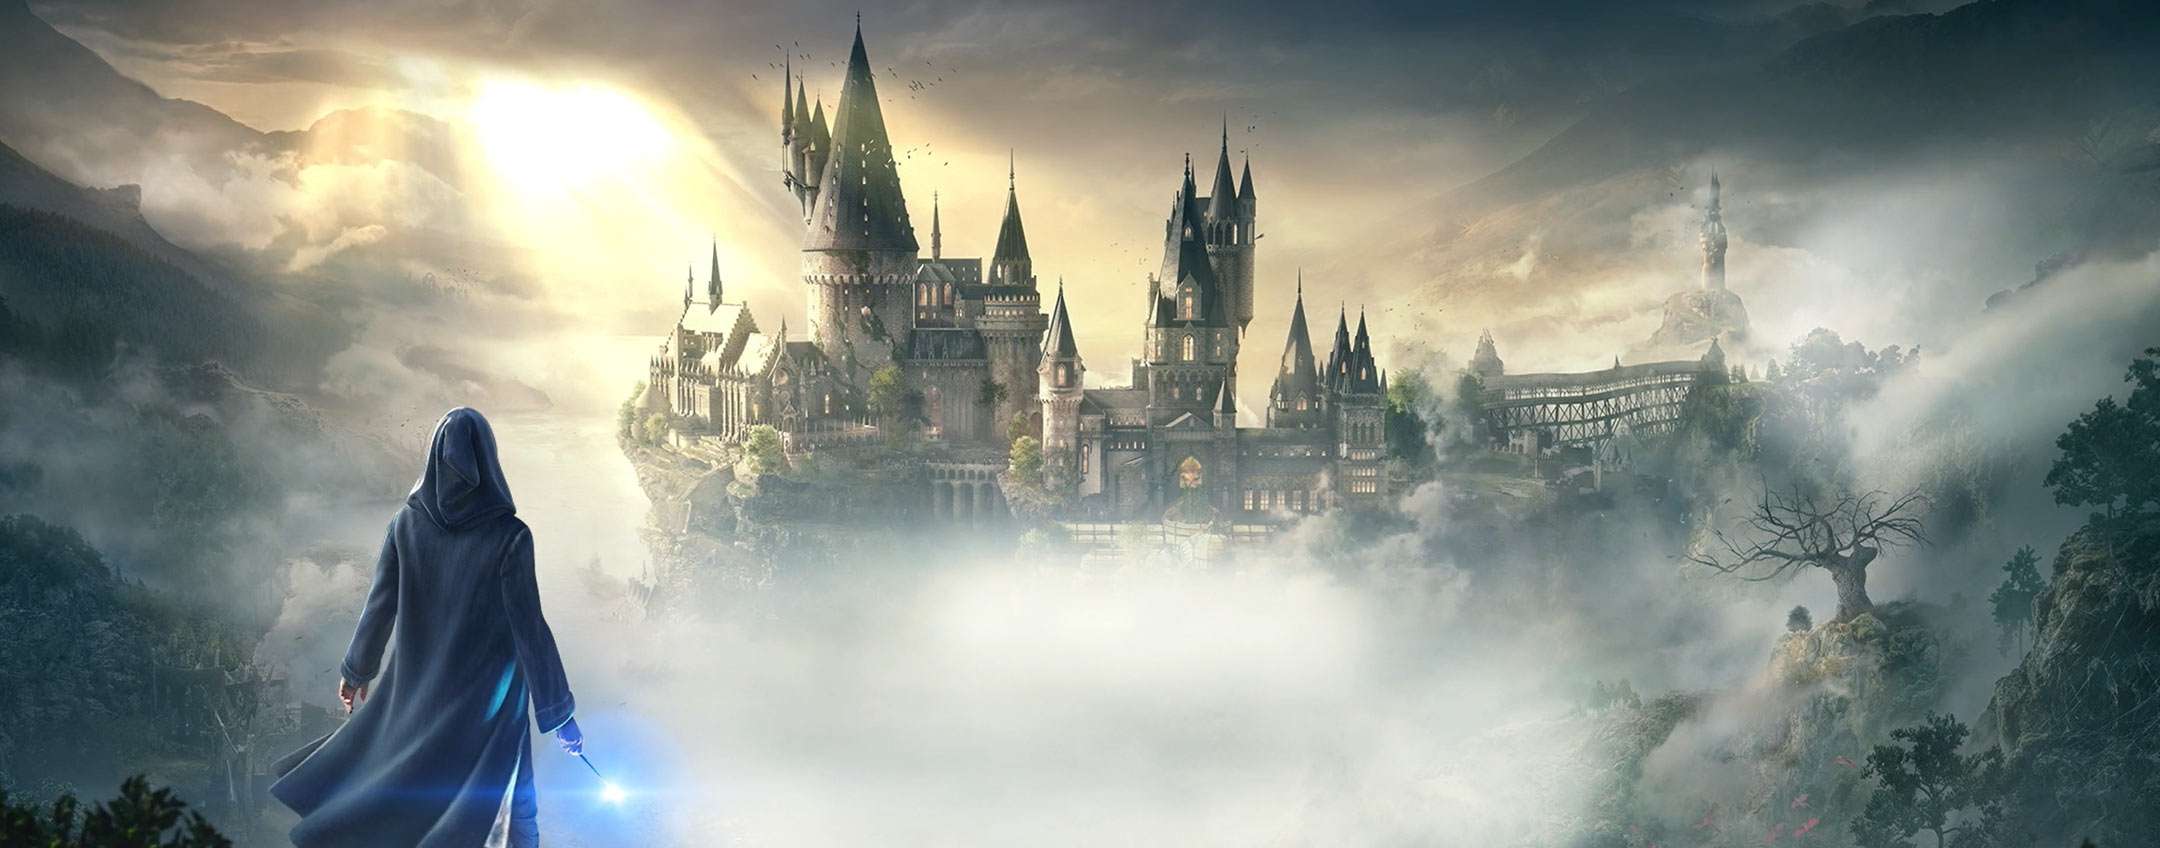 Offerte : Hogwarts Legacy per PS5 in pre-ordine con lo sconto del 34%